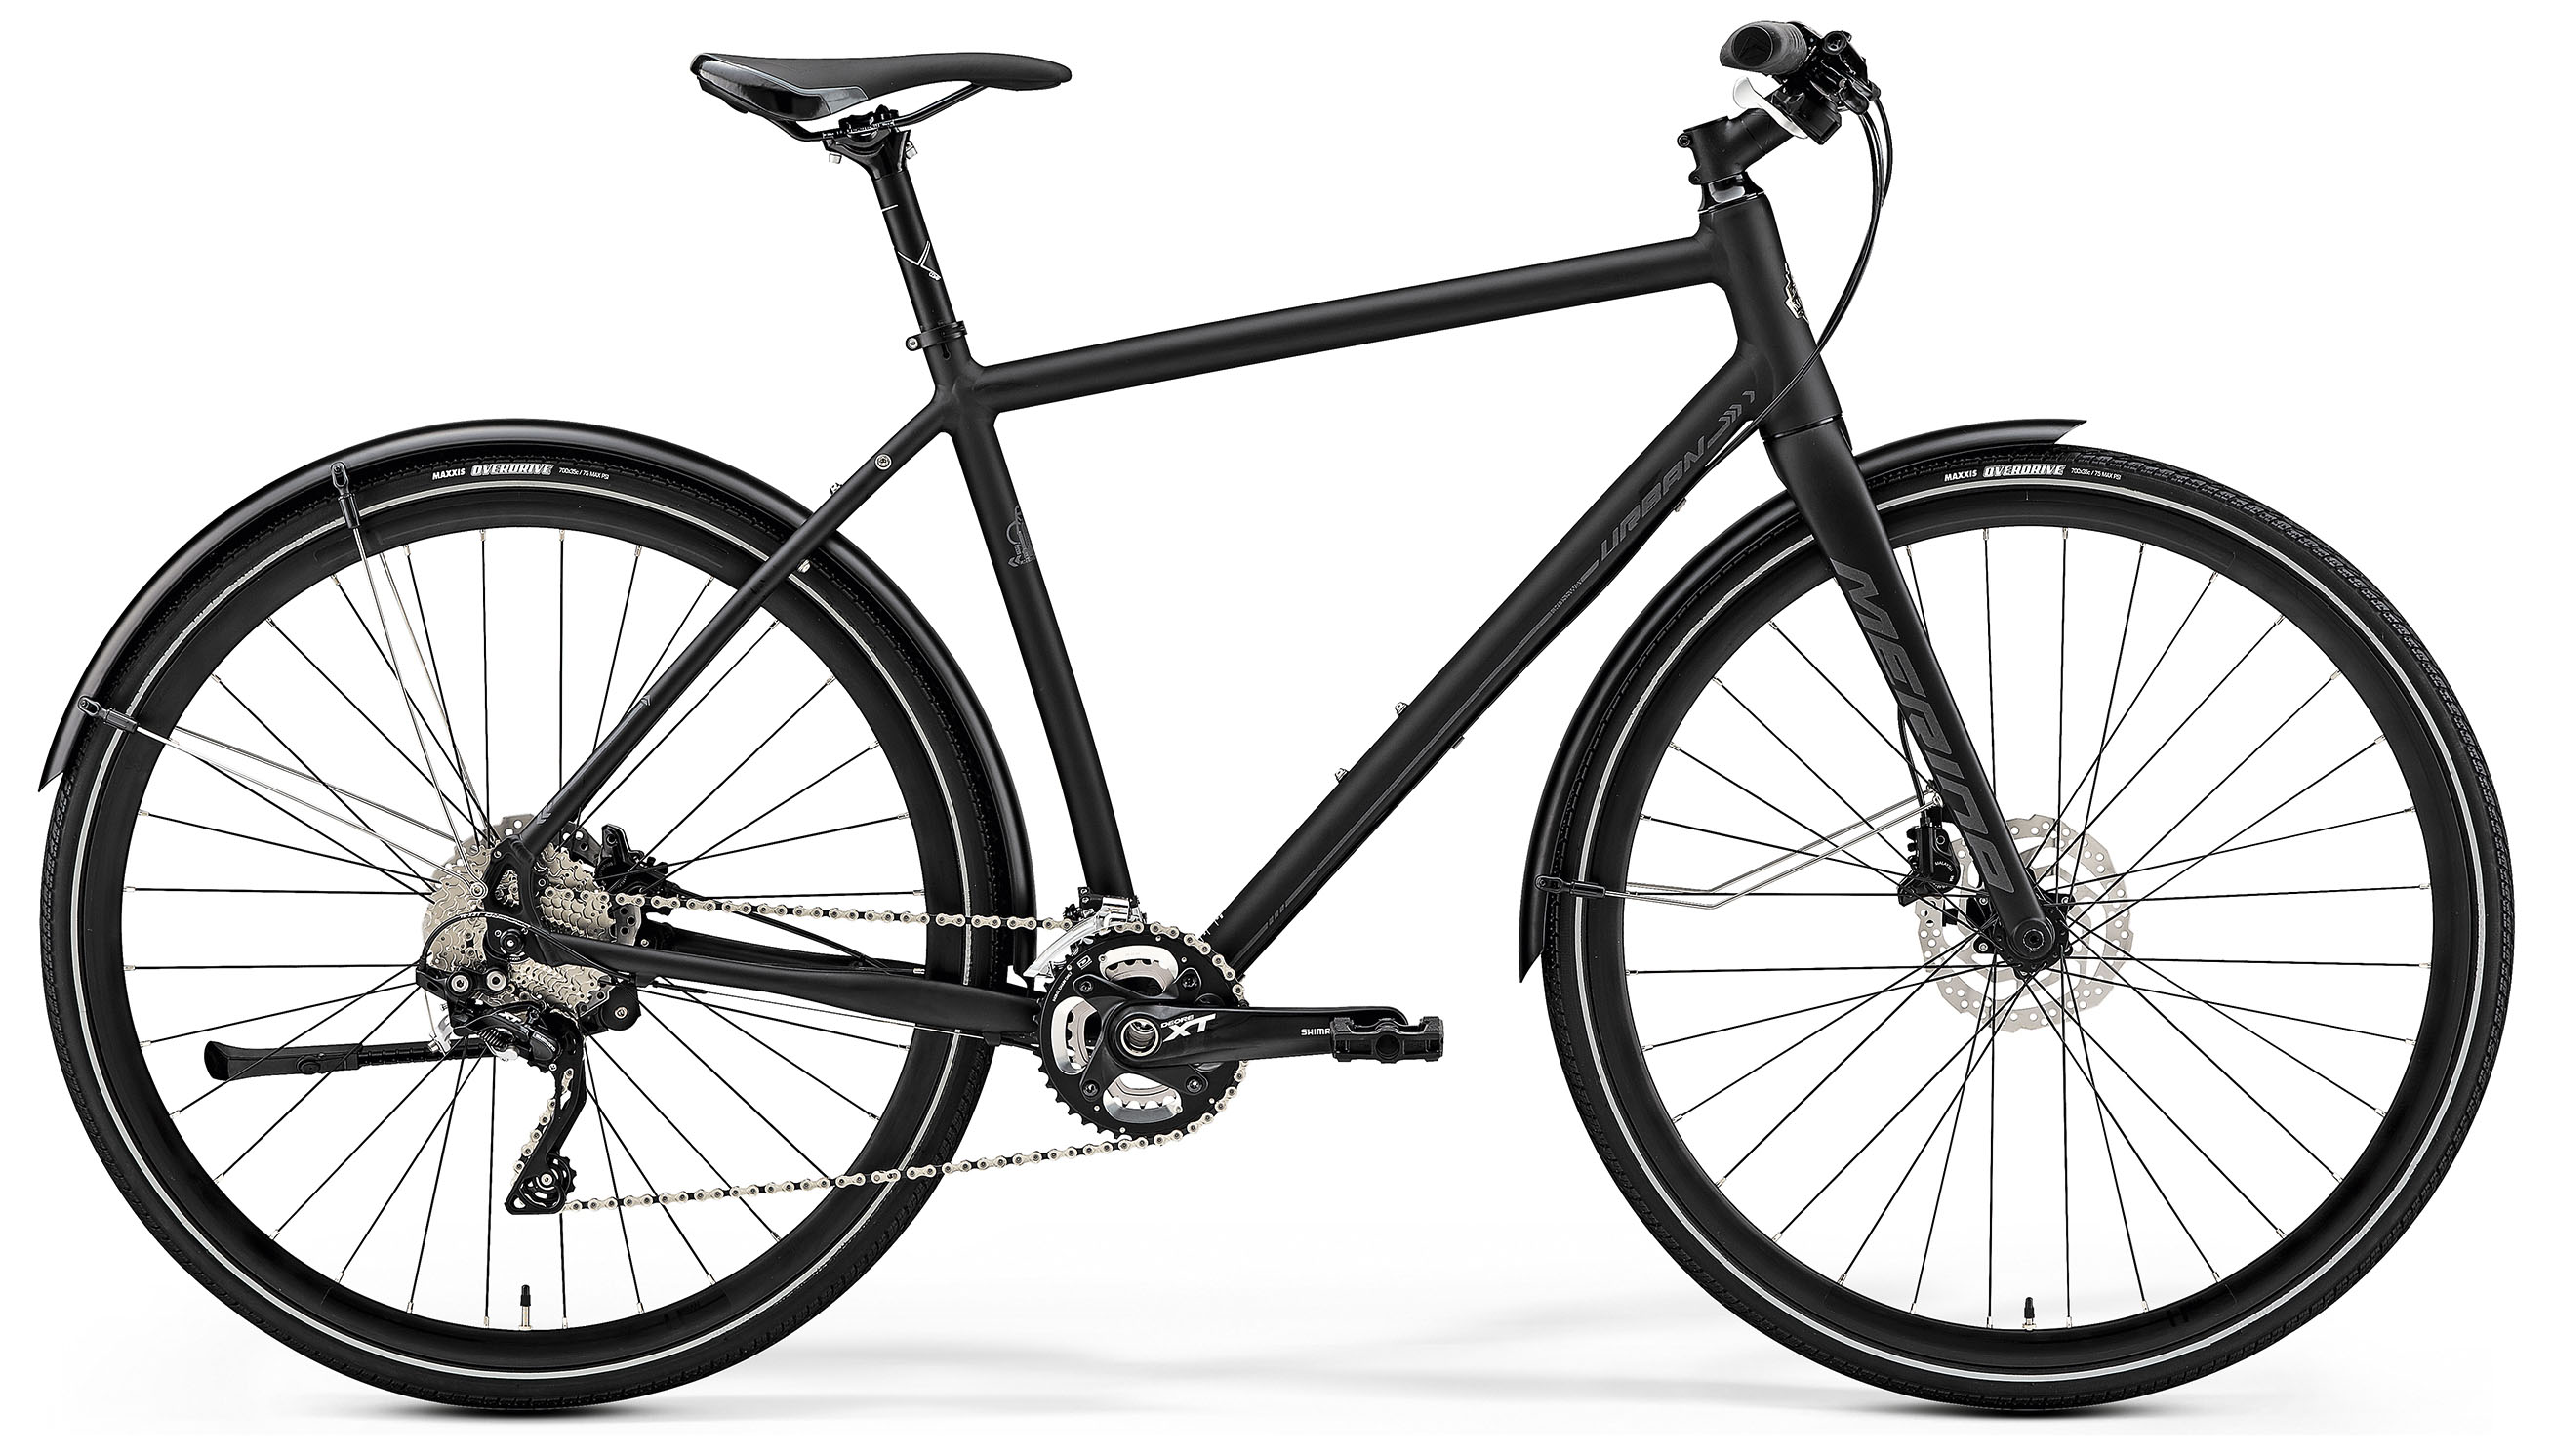  Отзывы о Городском велосипеде Merida Crossway Urban XT Edition 2019